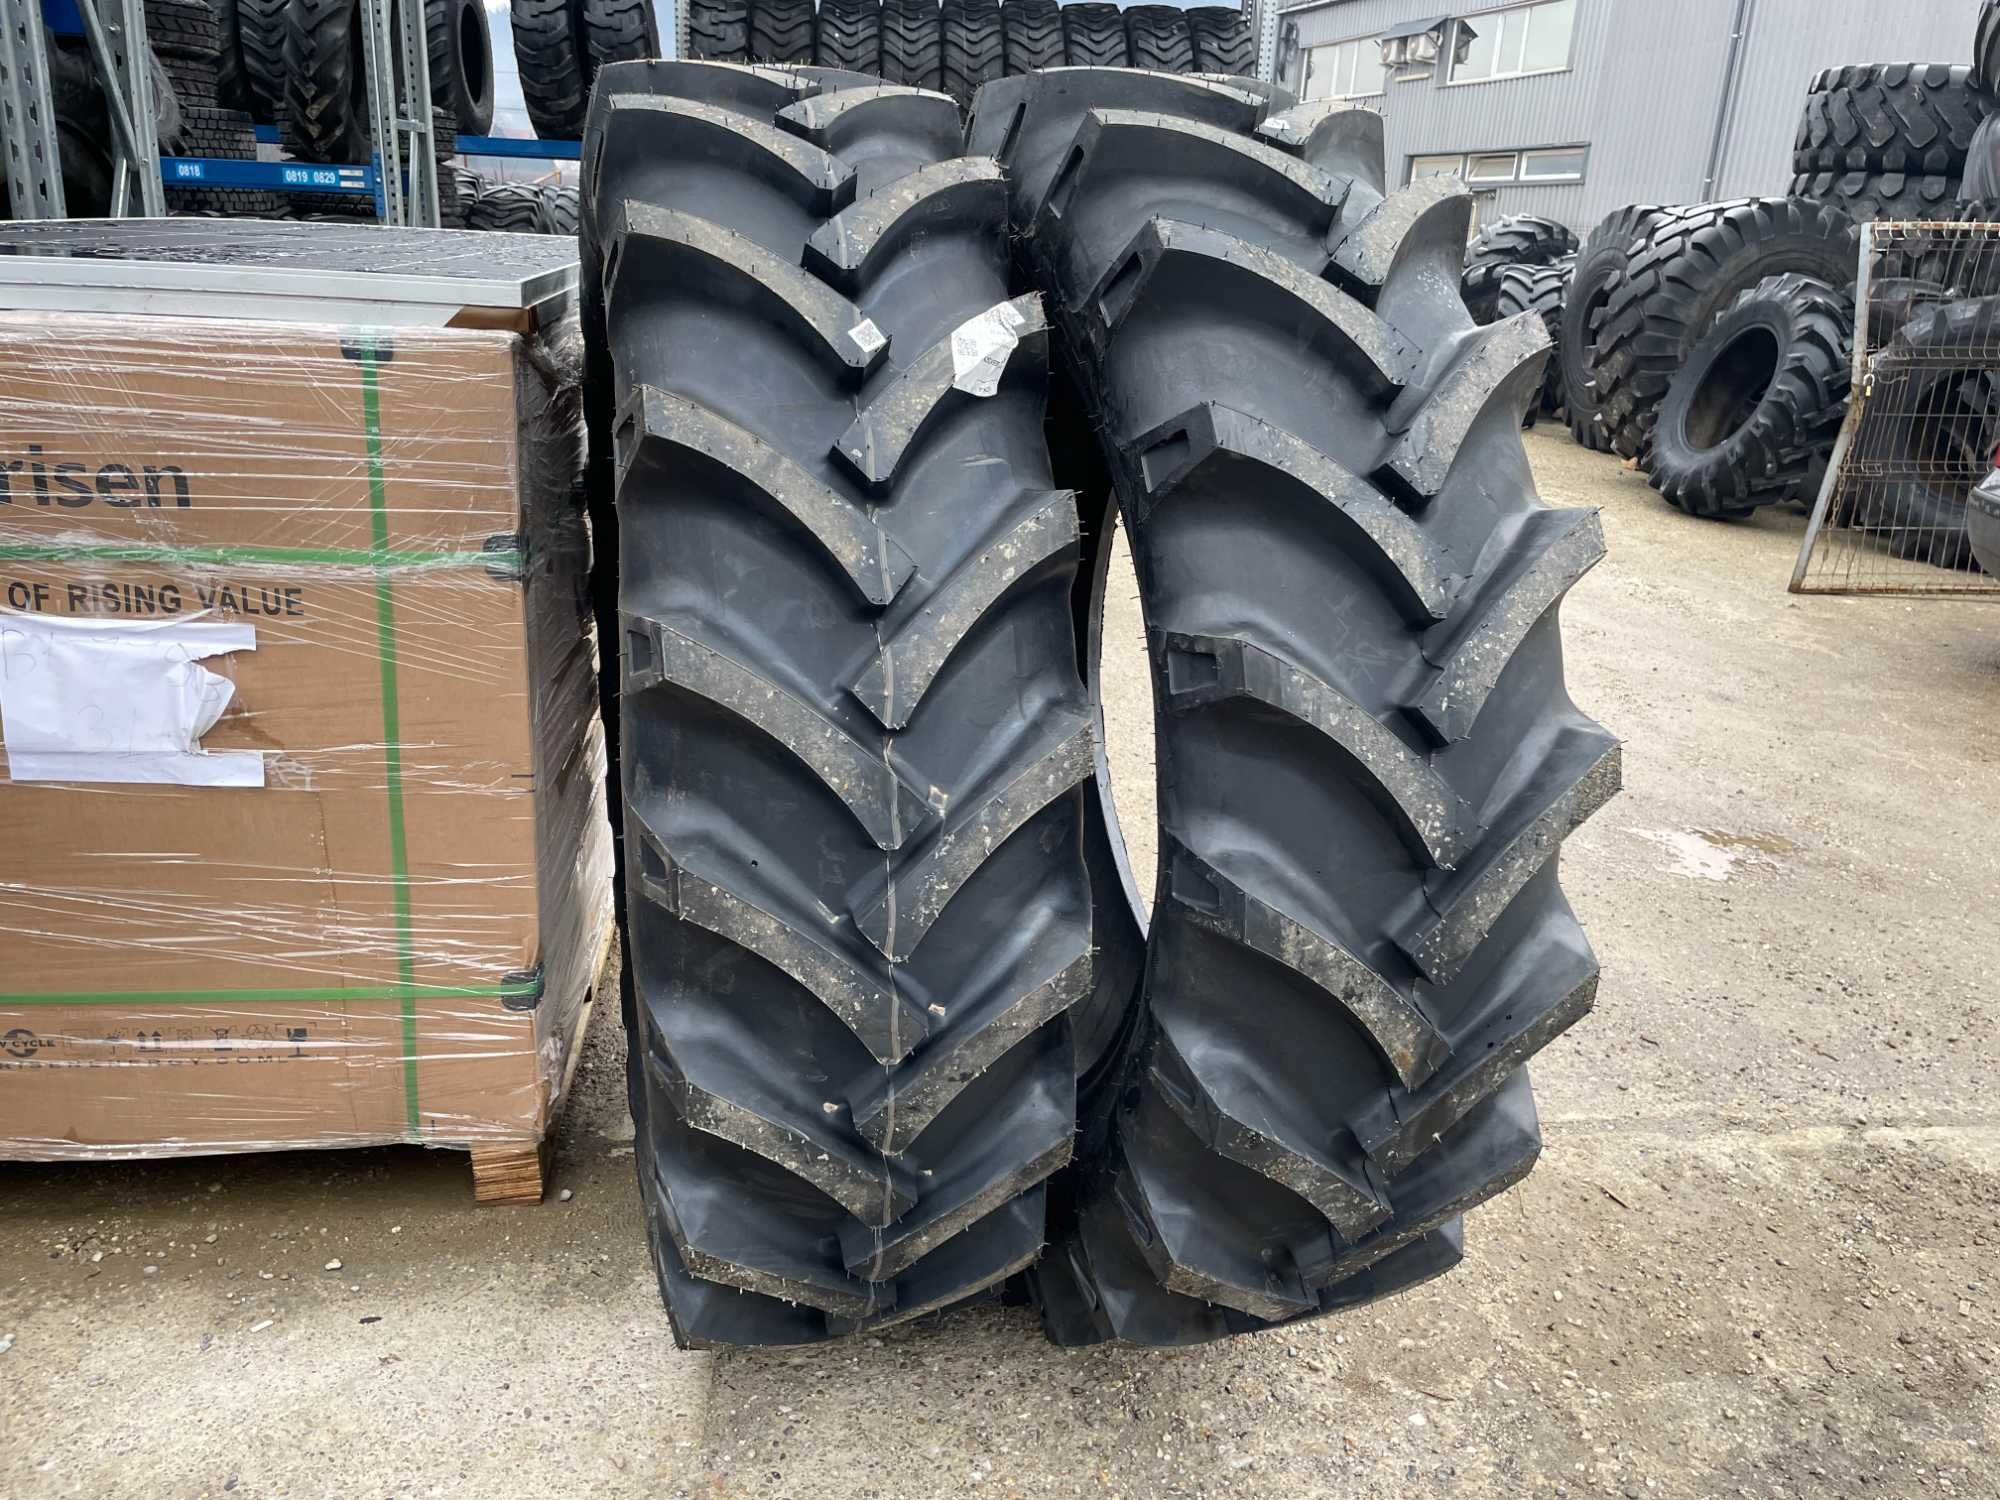 OZKA Cauciucuri noi agricole de tractor 16.9-38 14pliuri garantie